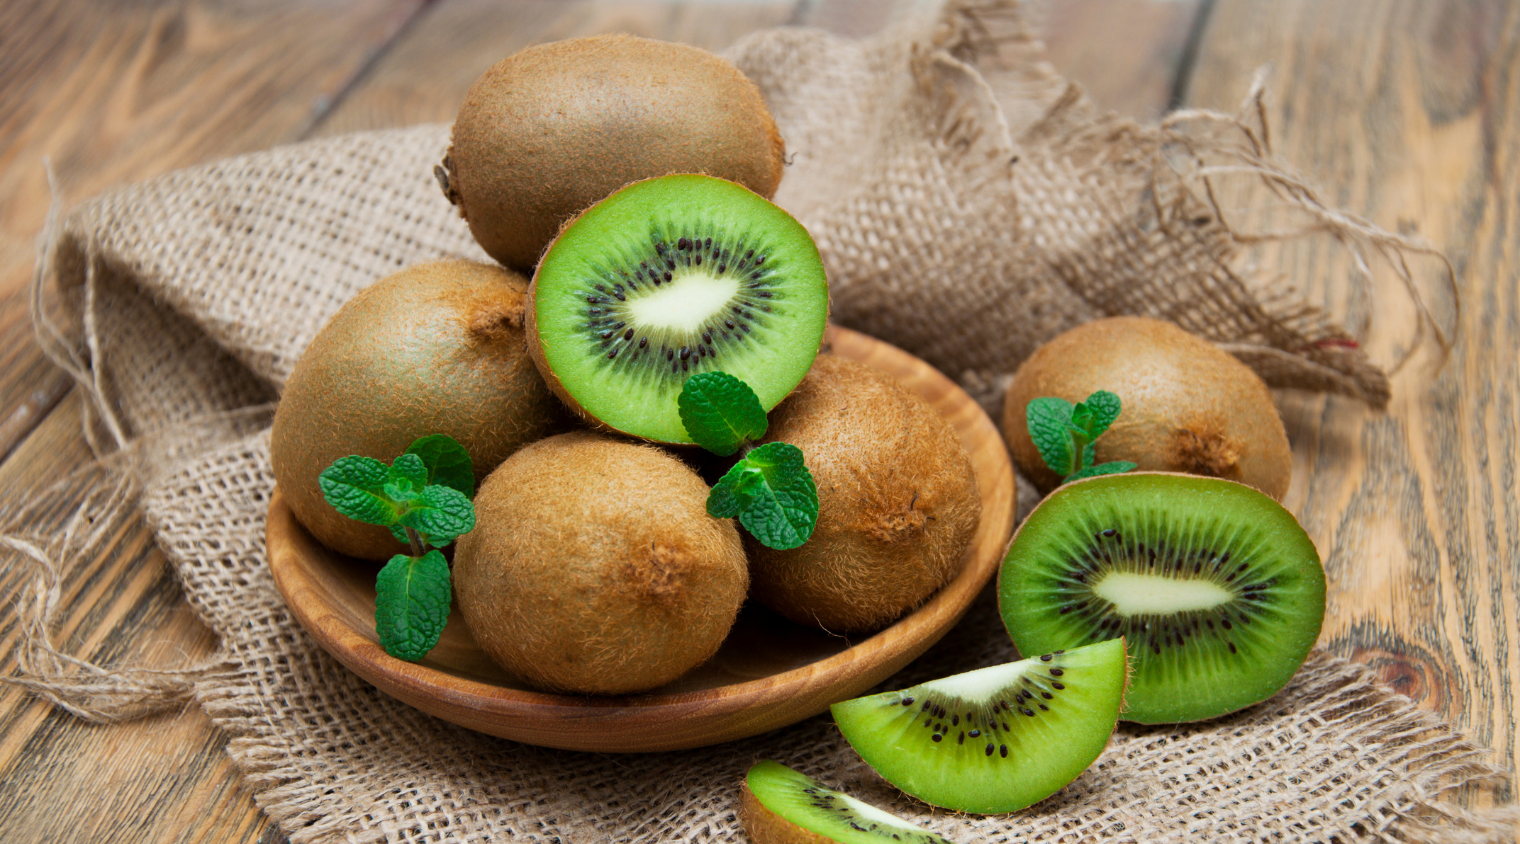 Giá trị dinh dưỡng mà kiwi đem lại